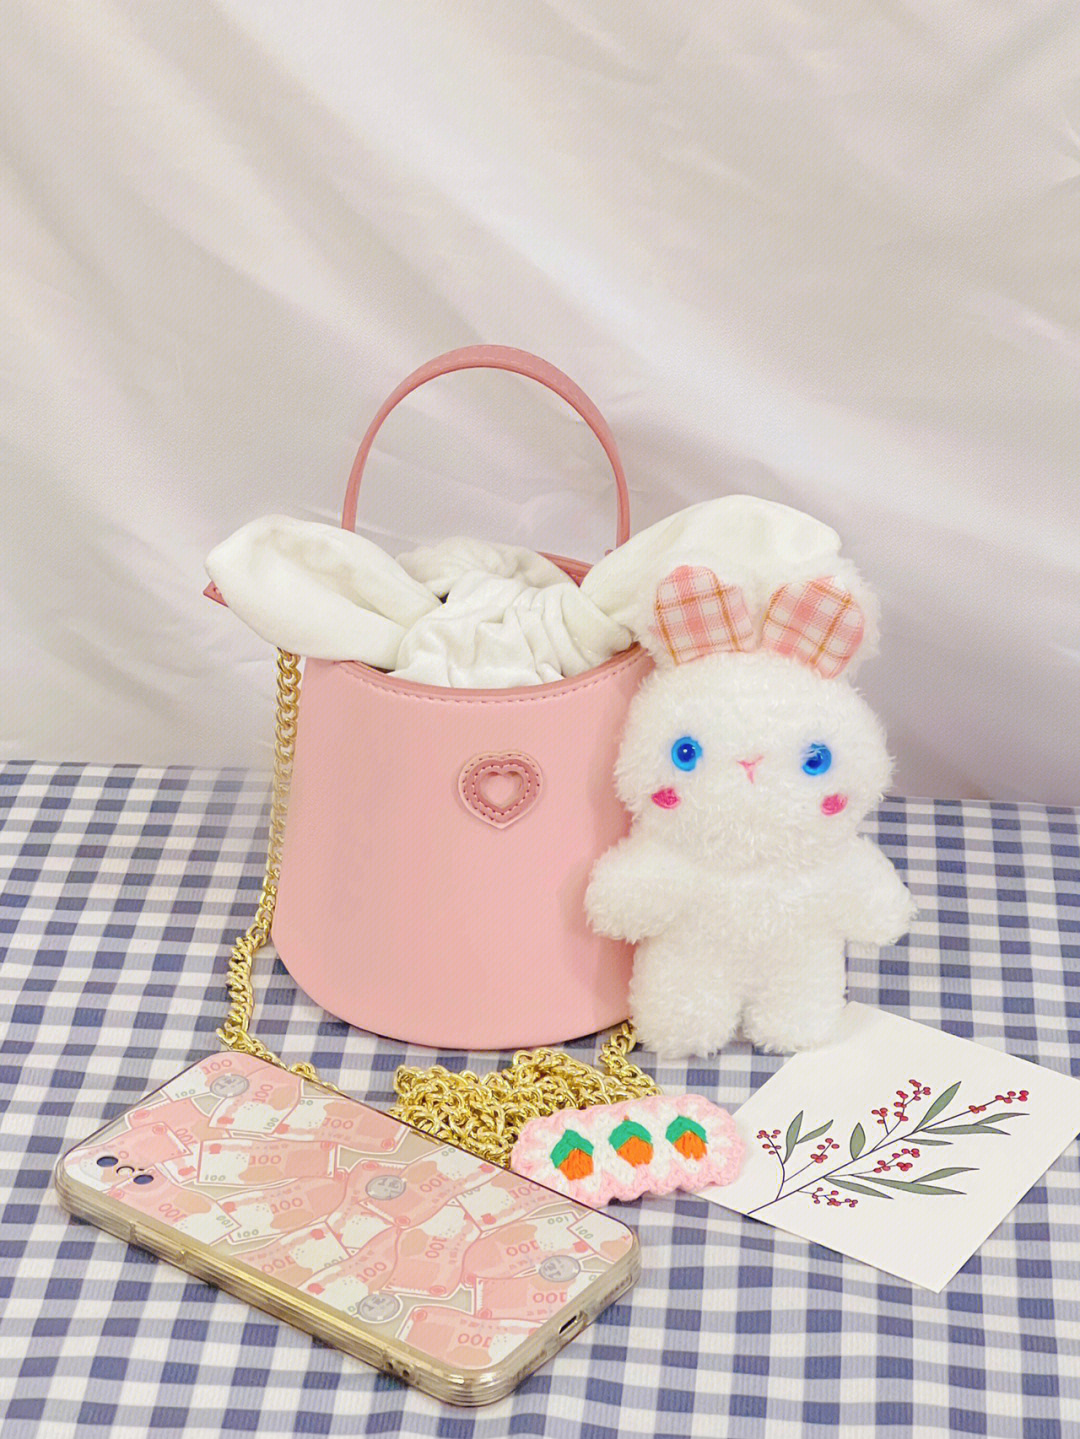 最近真的是好喜欢粉色系的包包哇介只小兔子水桶包太可爱啦粉粉嫩嫩敲